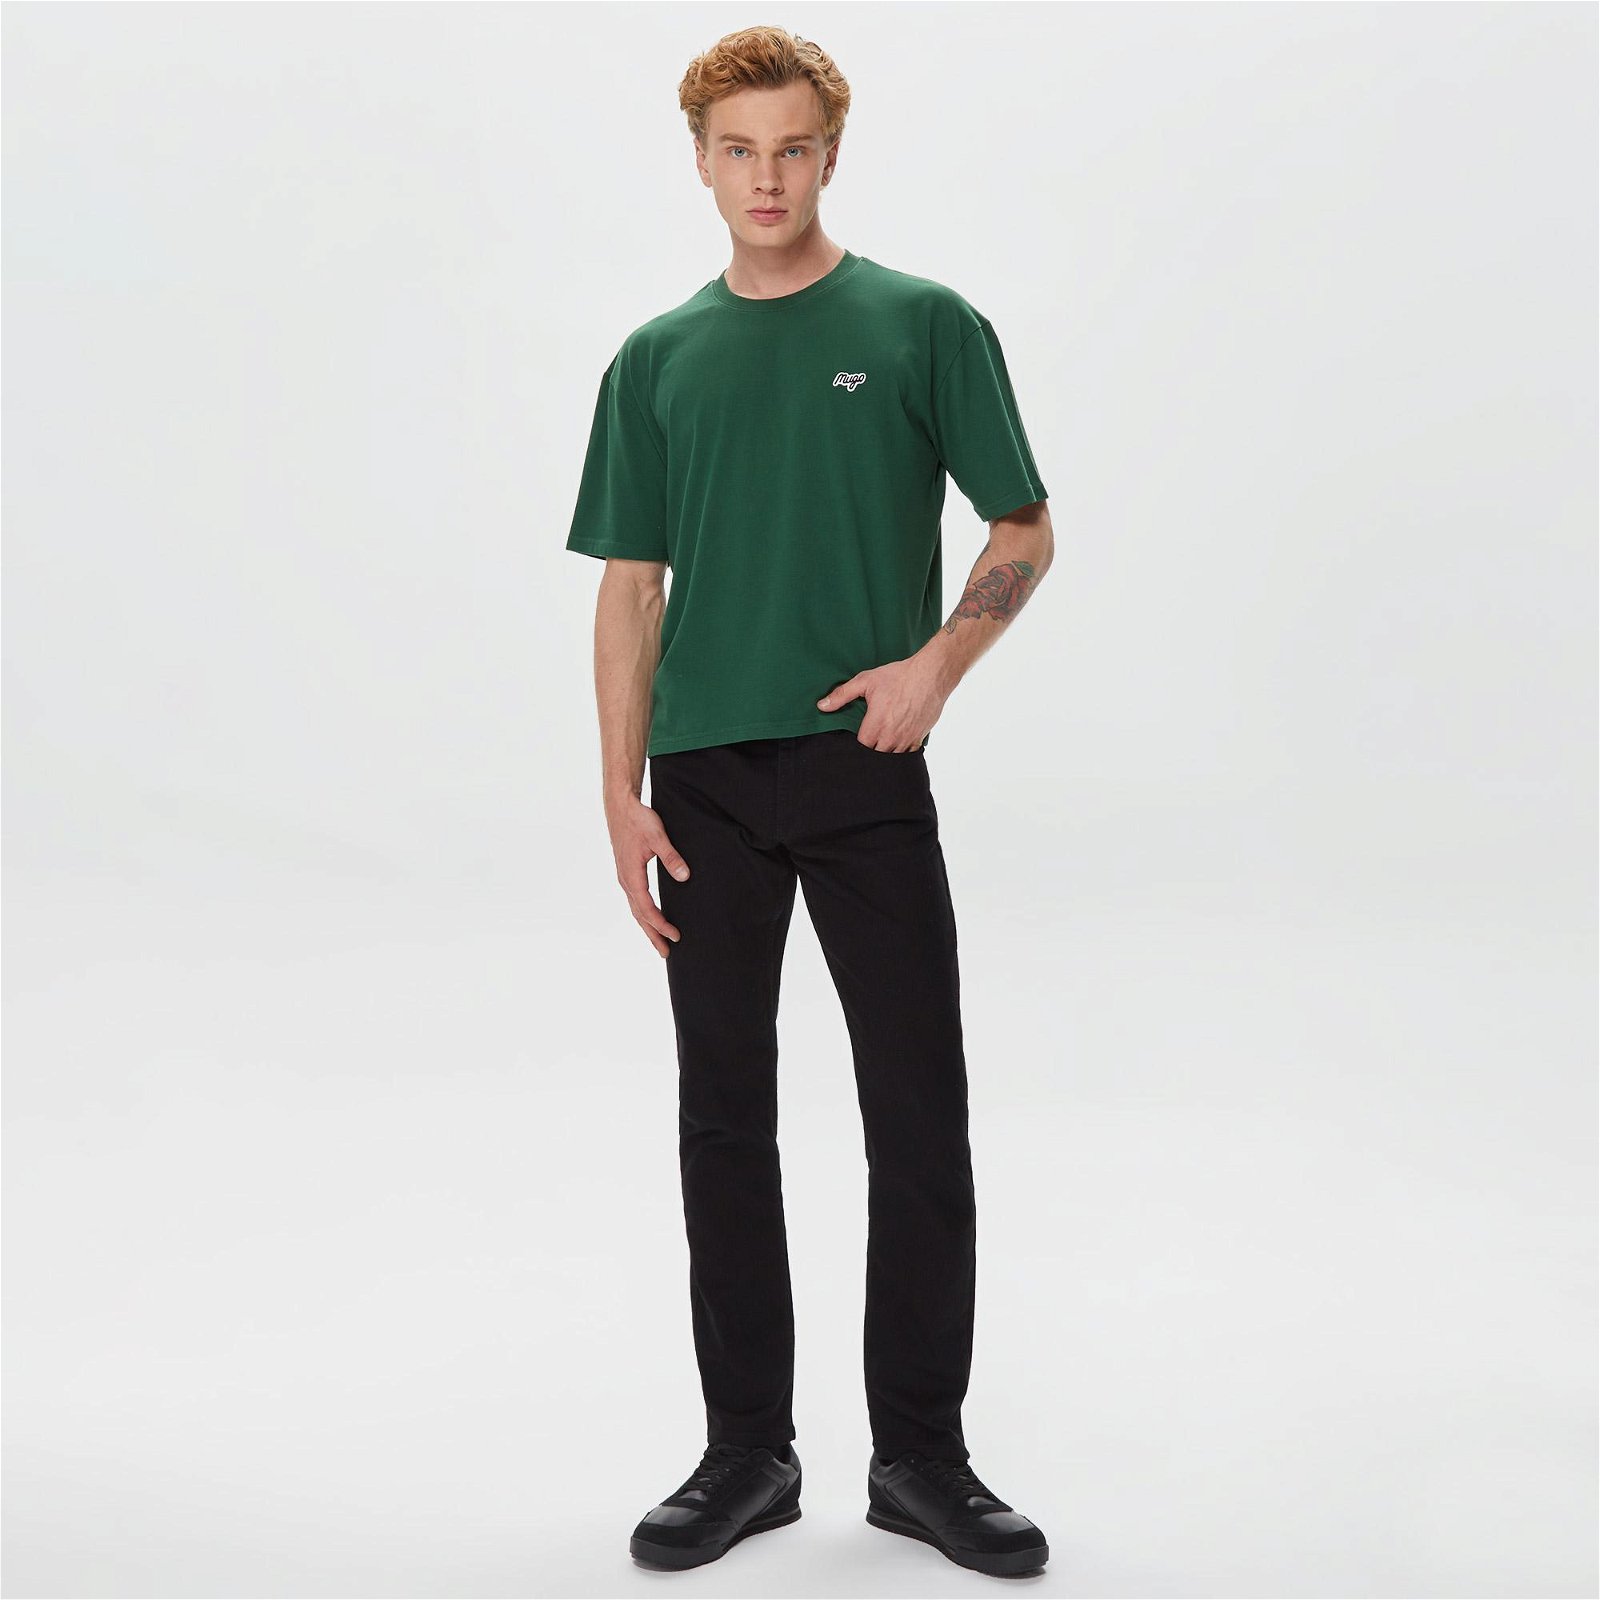 Mugo Basic Erkek Yeşil T-Shirt